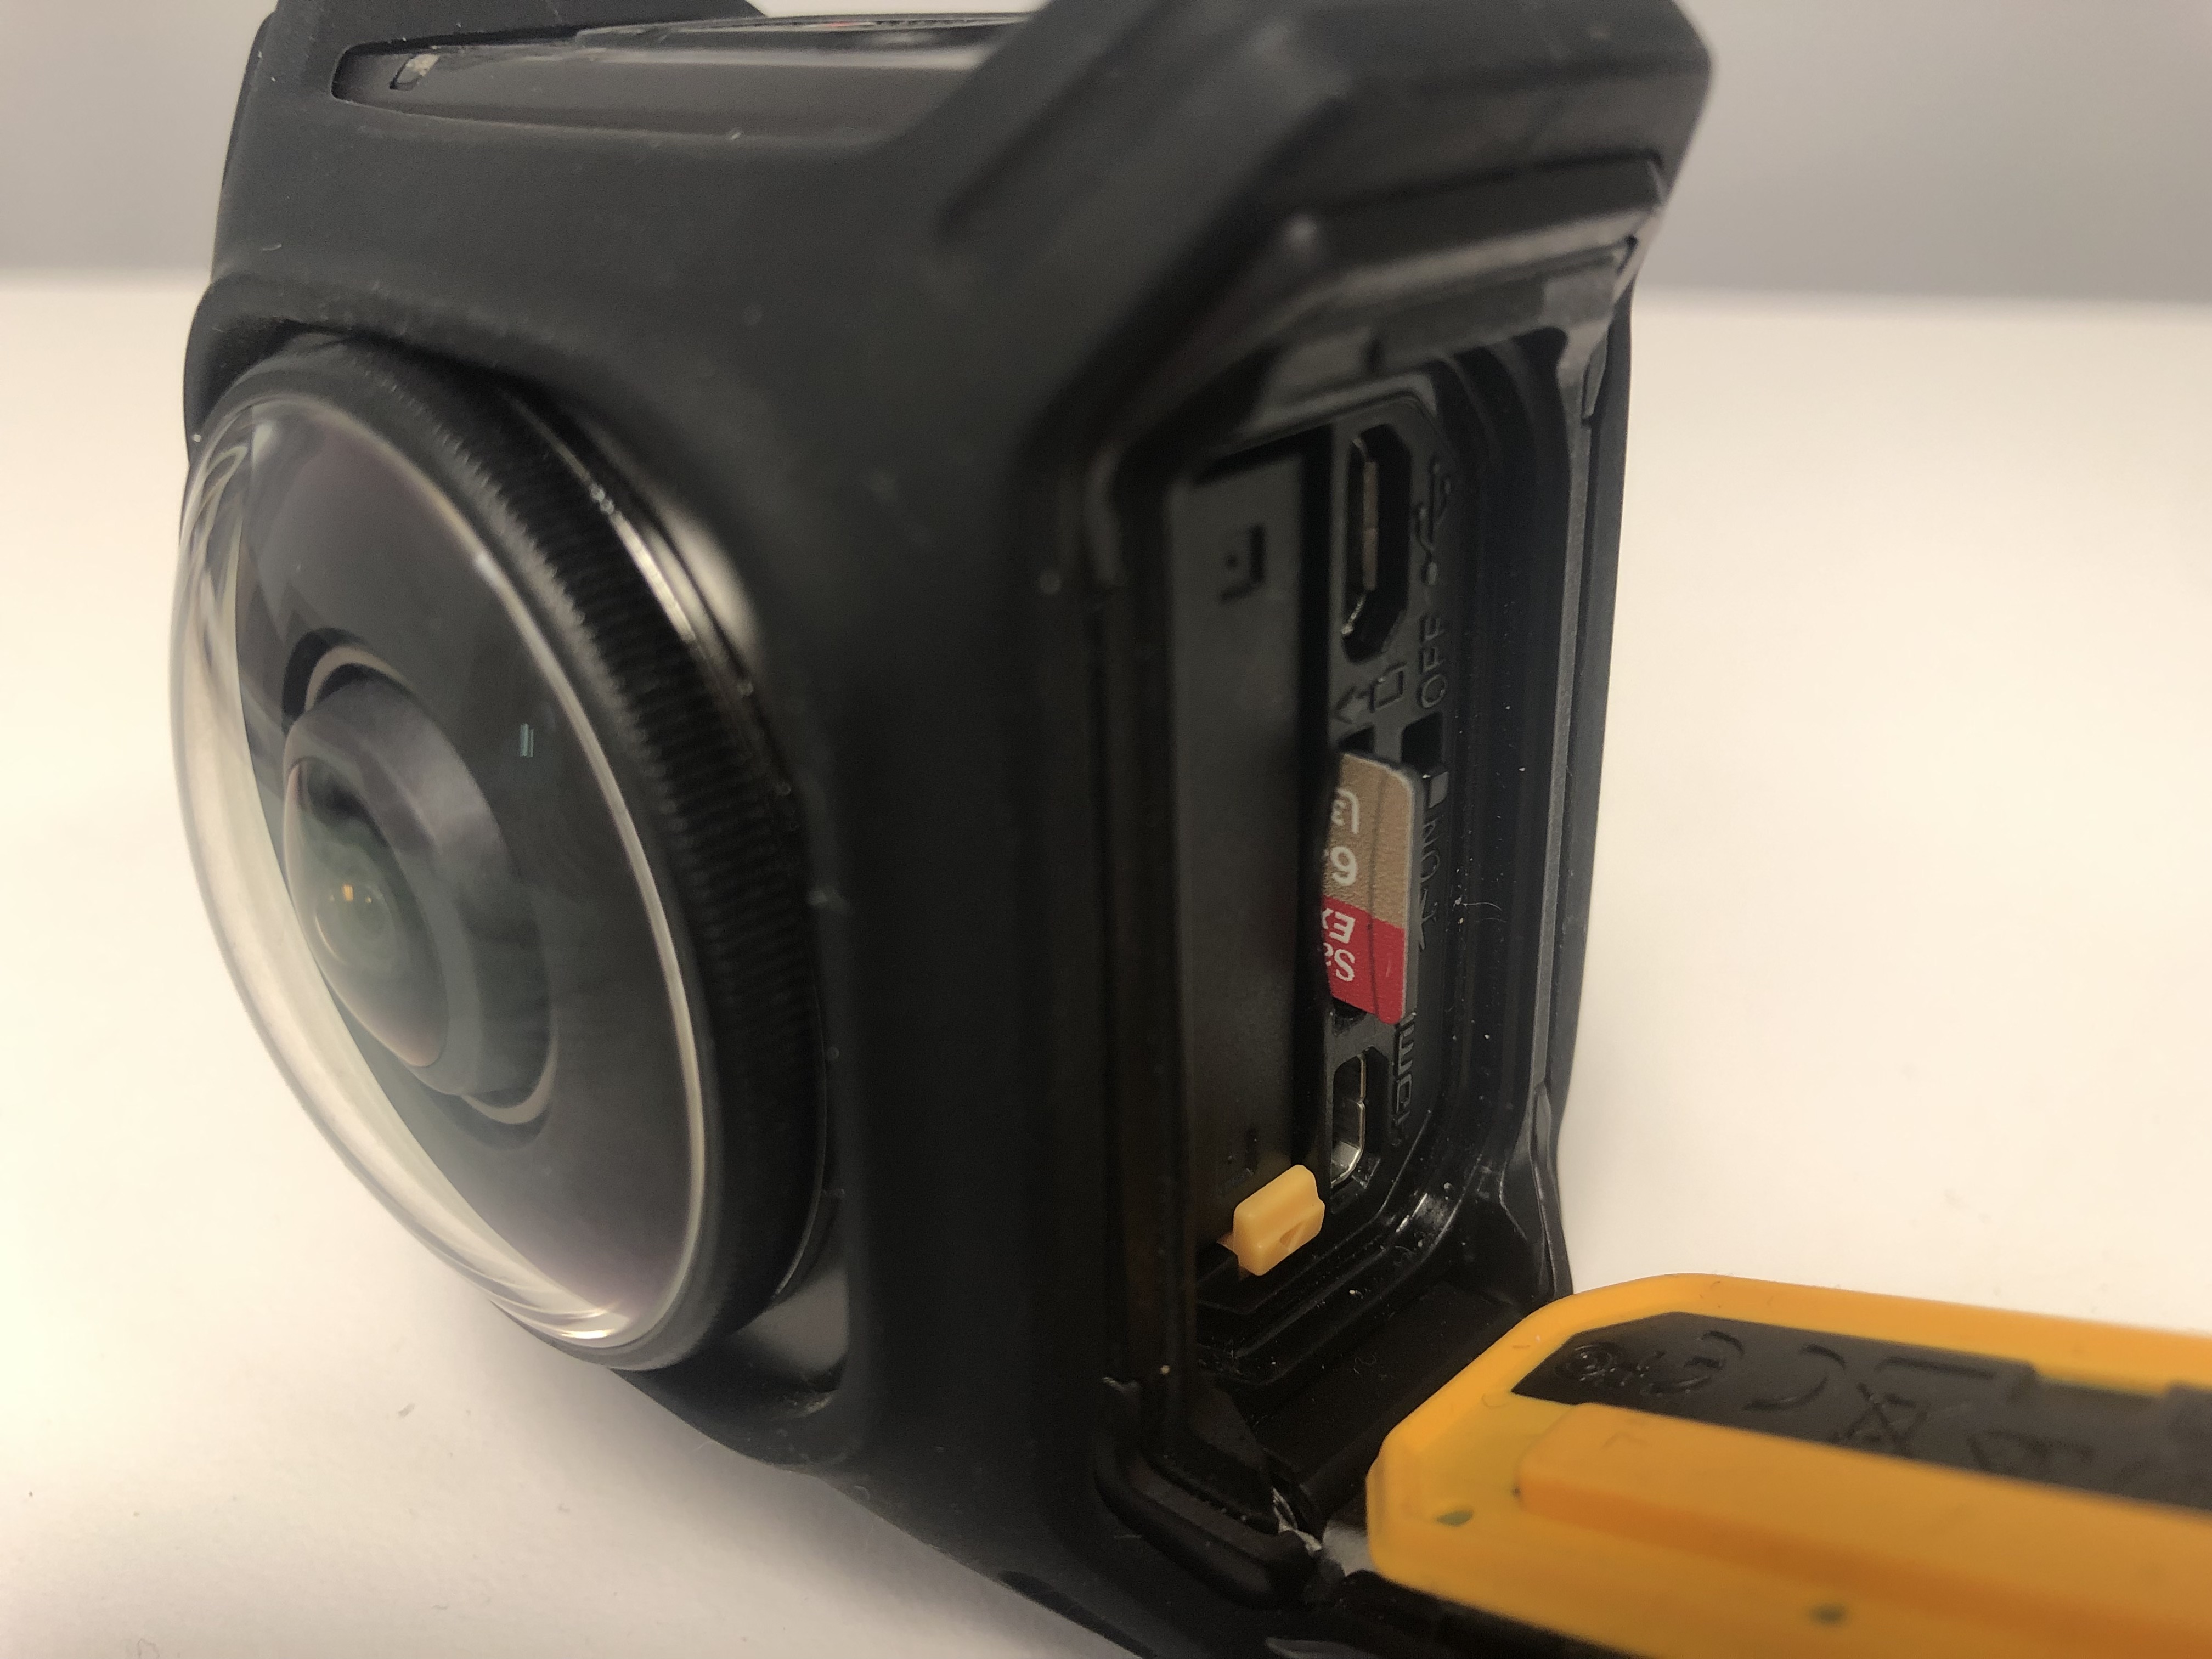 SD card slot in camera